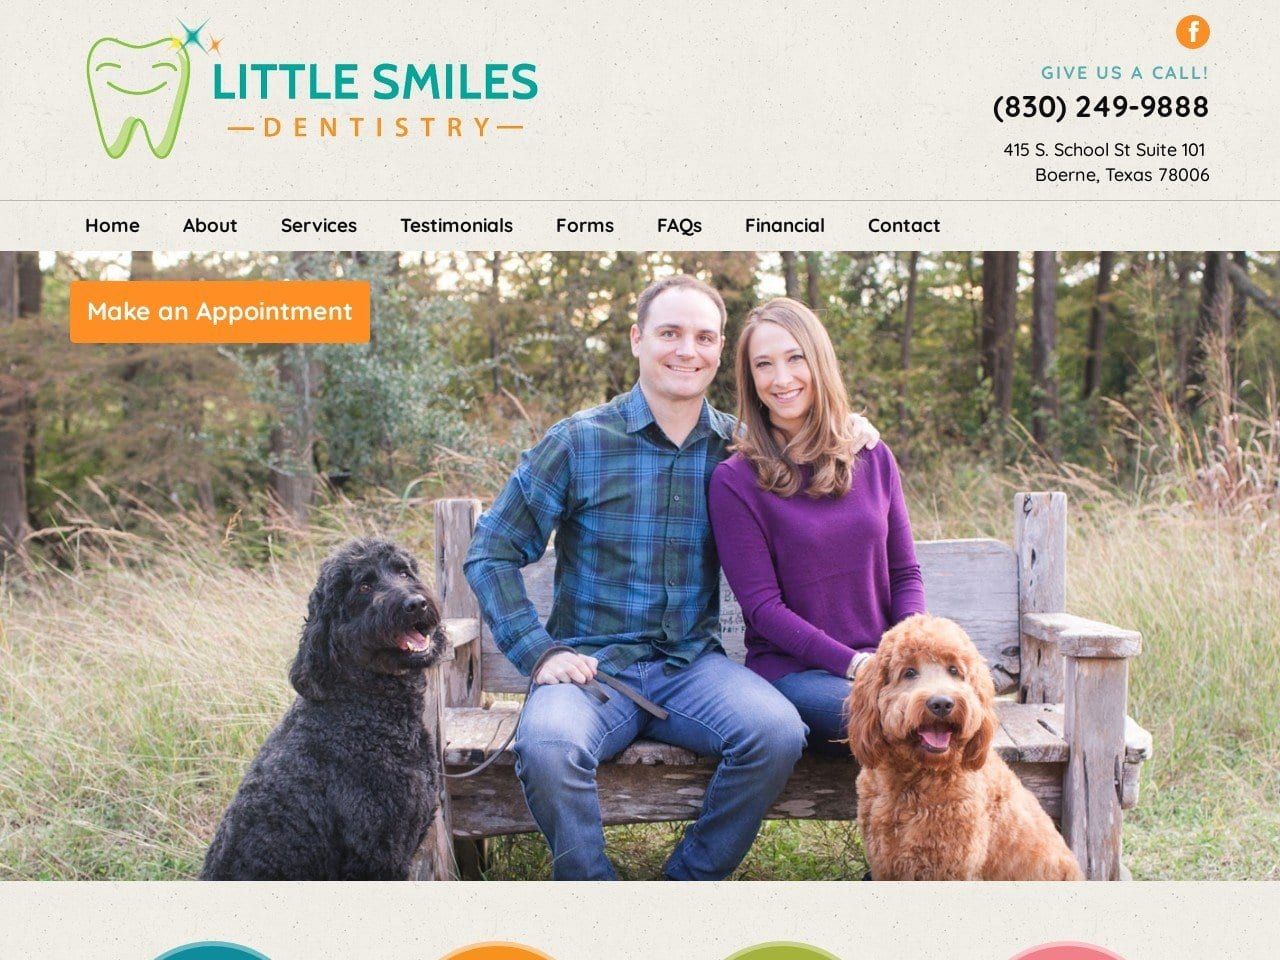 Little Smiles Dentistry Website Screenshot from littlesmilesdentistry.com